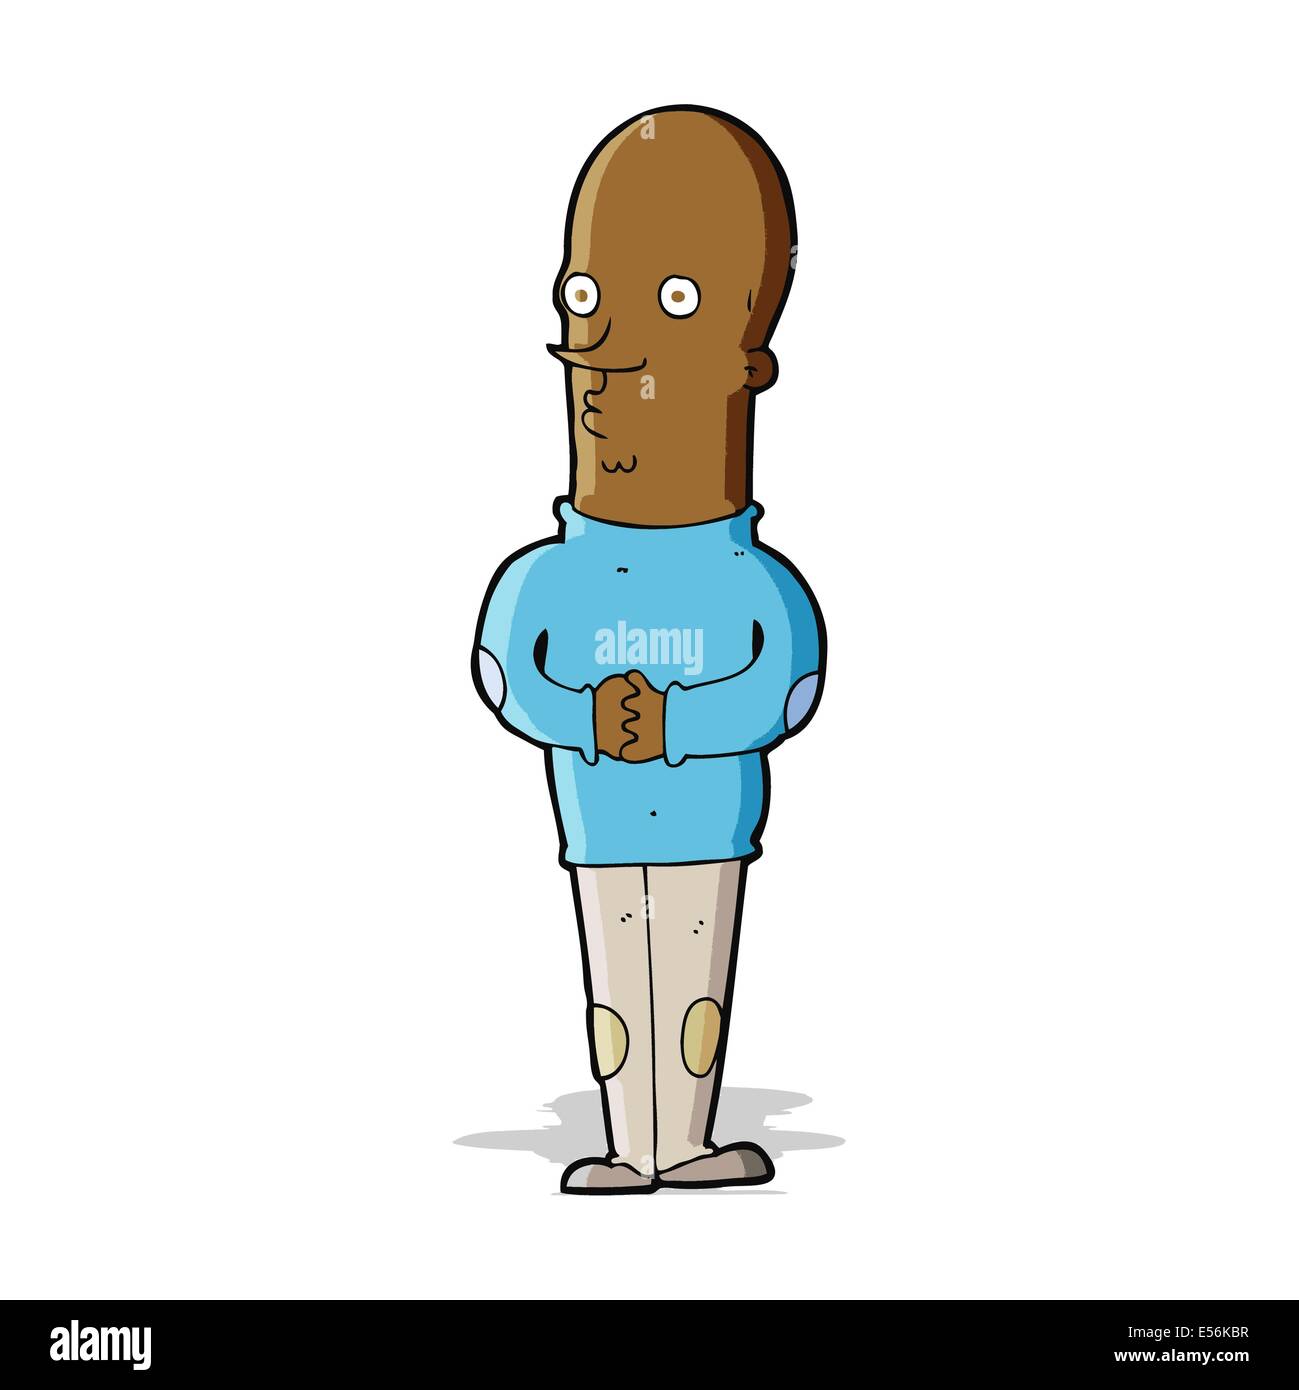 cartoon funny bald man Stock Vector Image & Art - Alamy